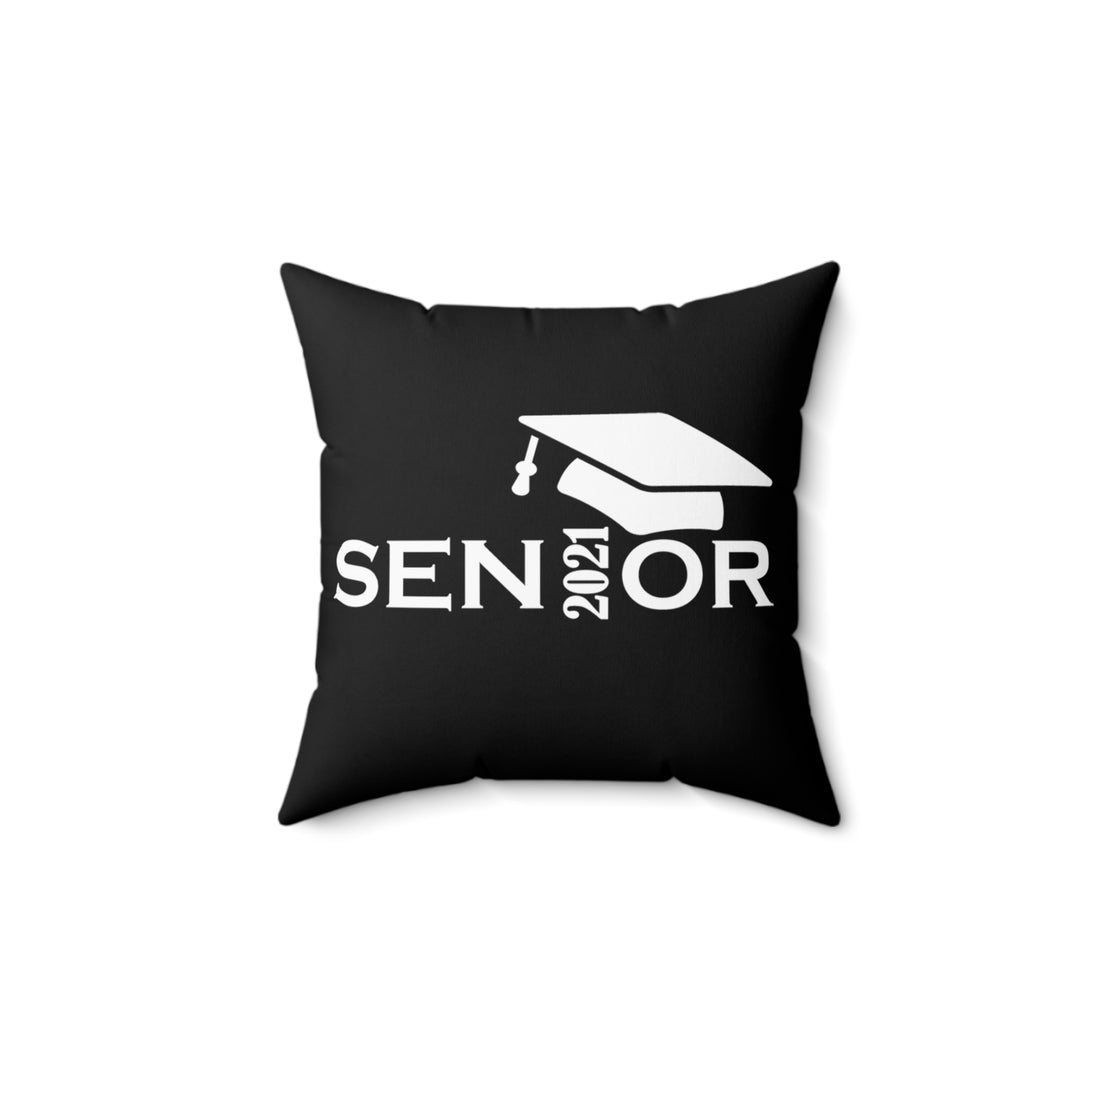 Senior Cap With Class Year Customizable - Black Pillow